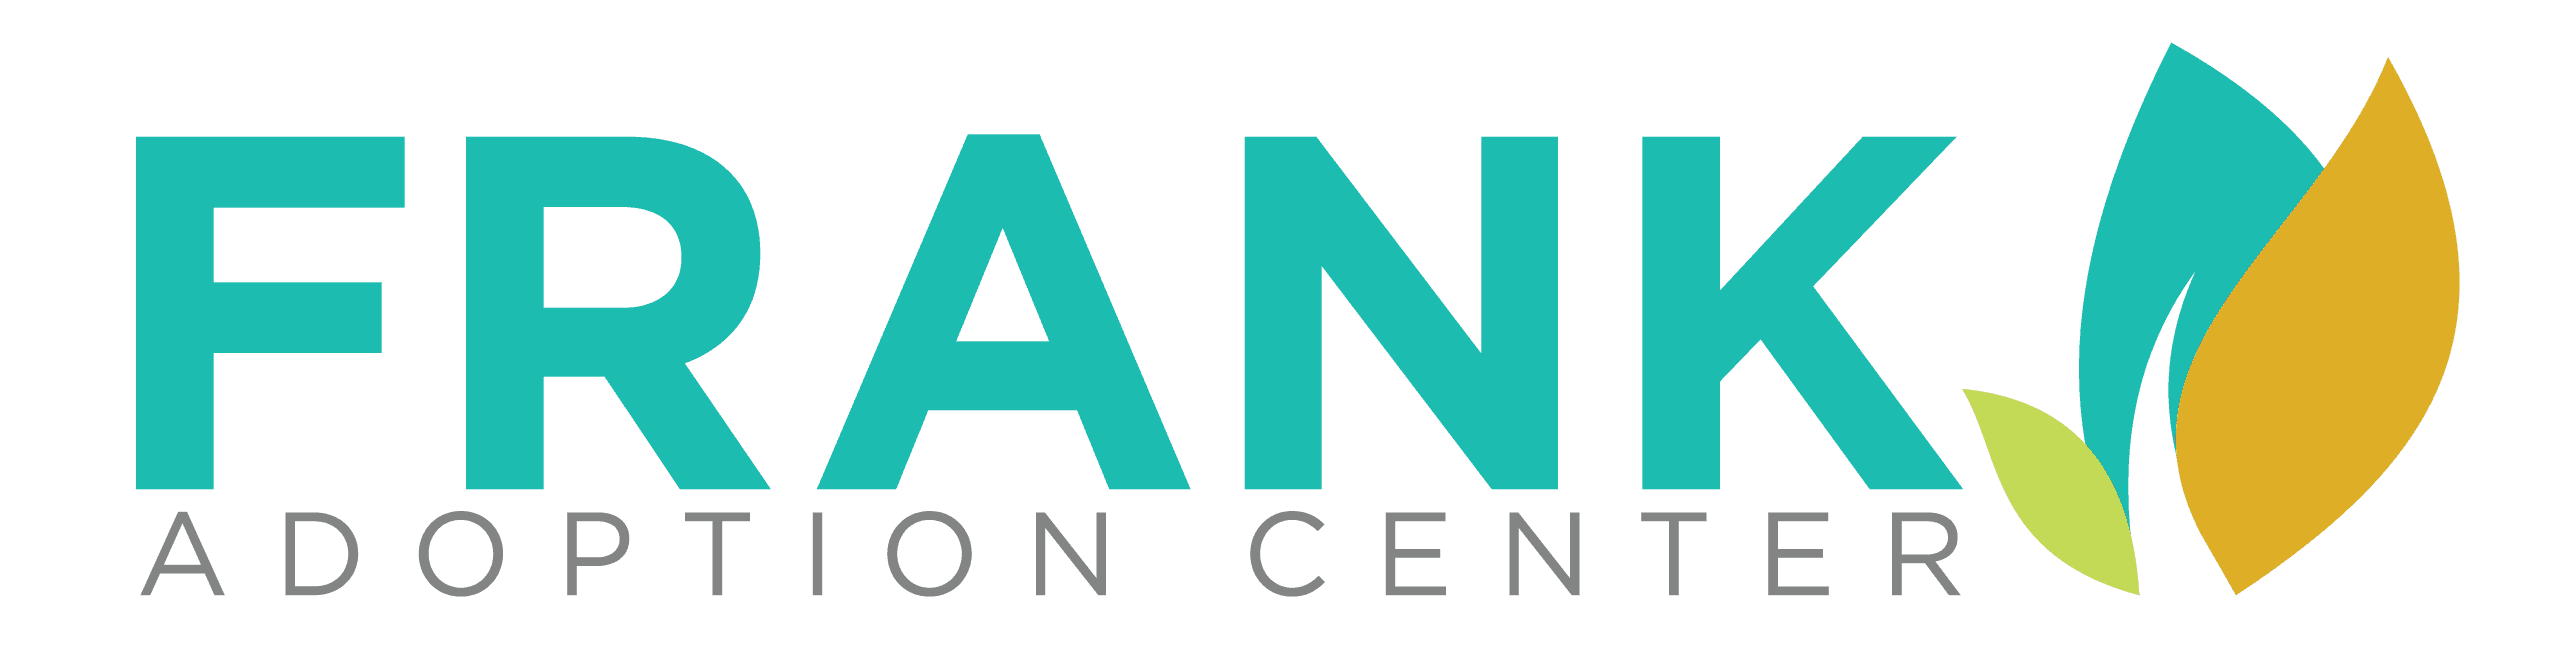 Frank-Adoption-Center-Logo-compressed